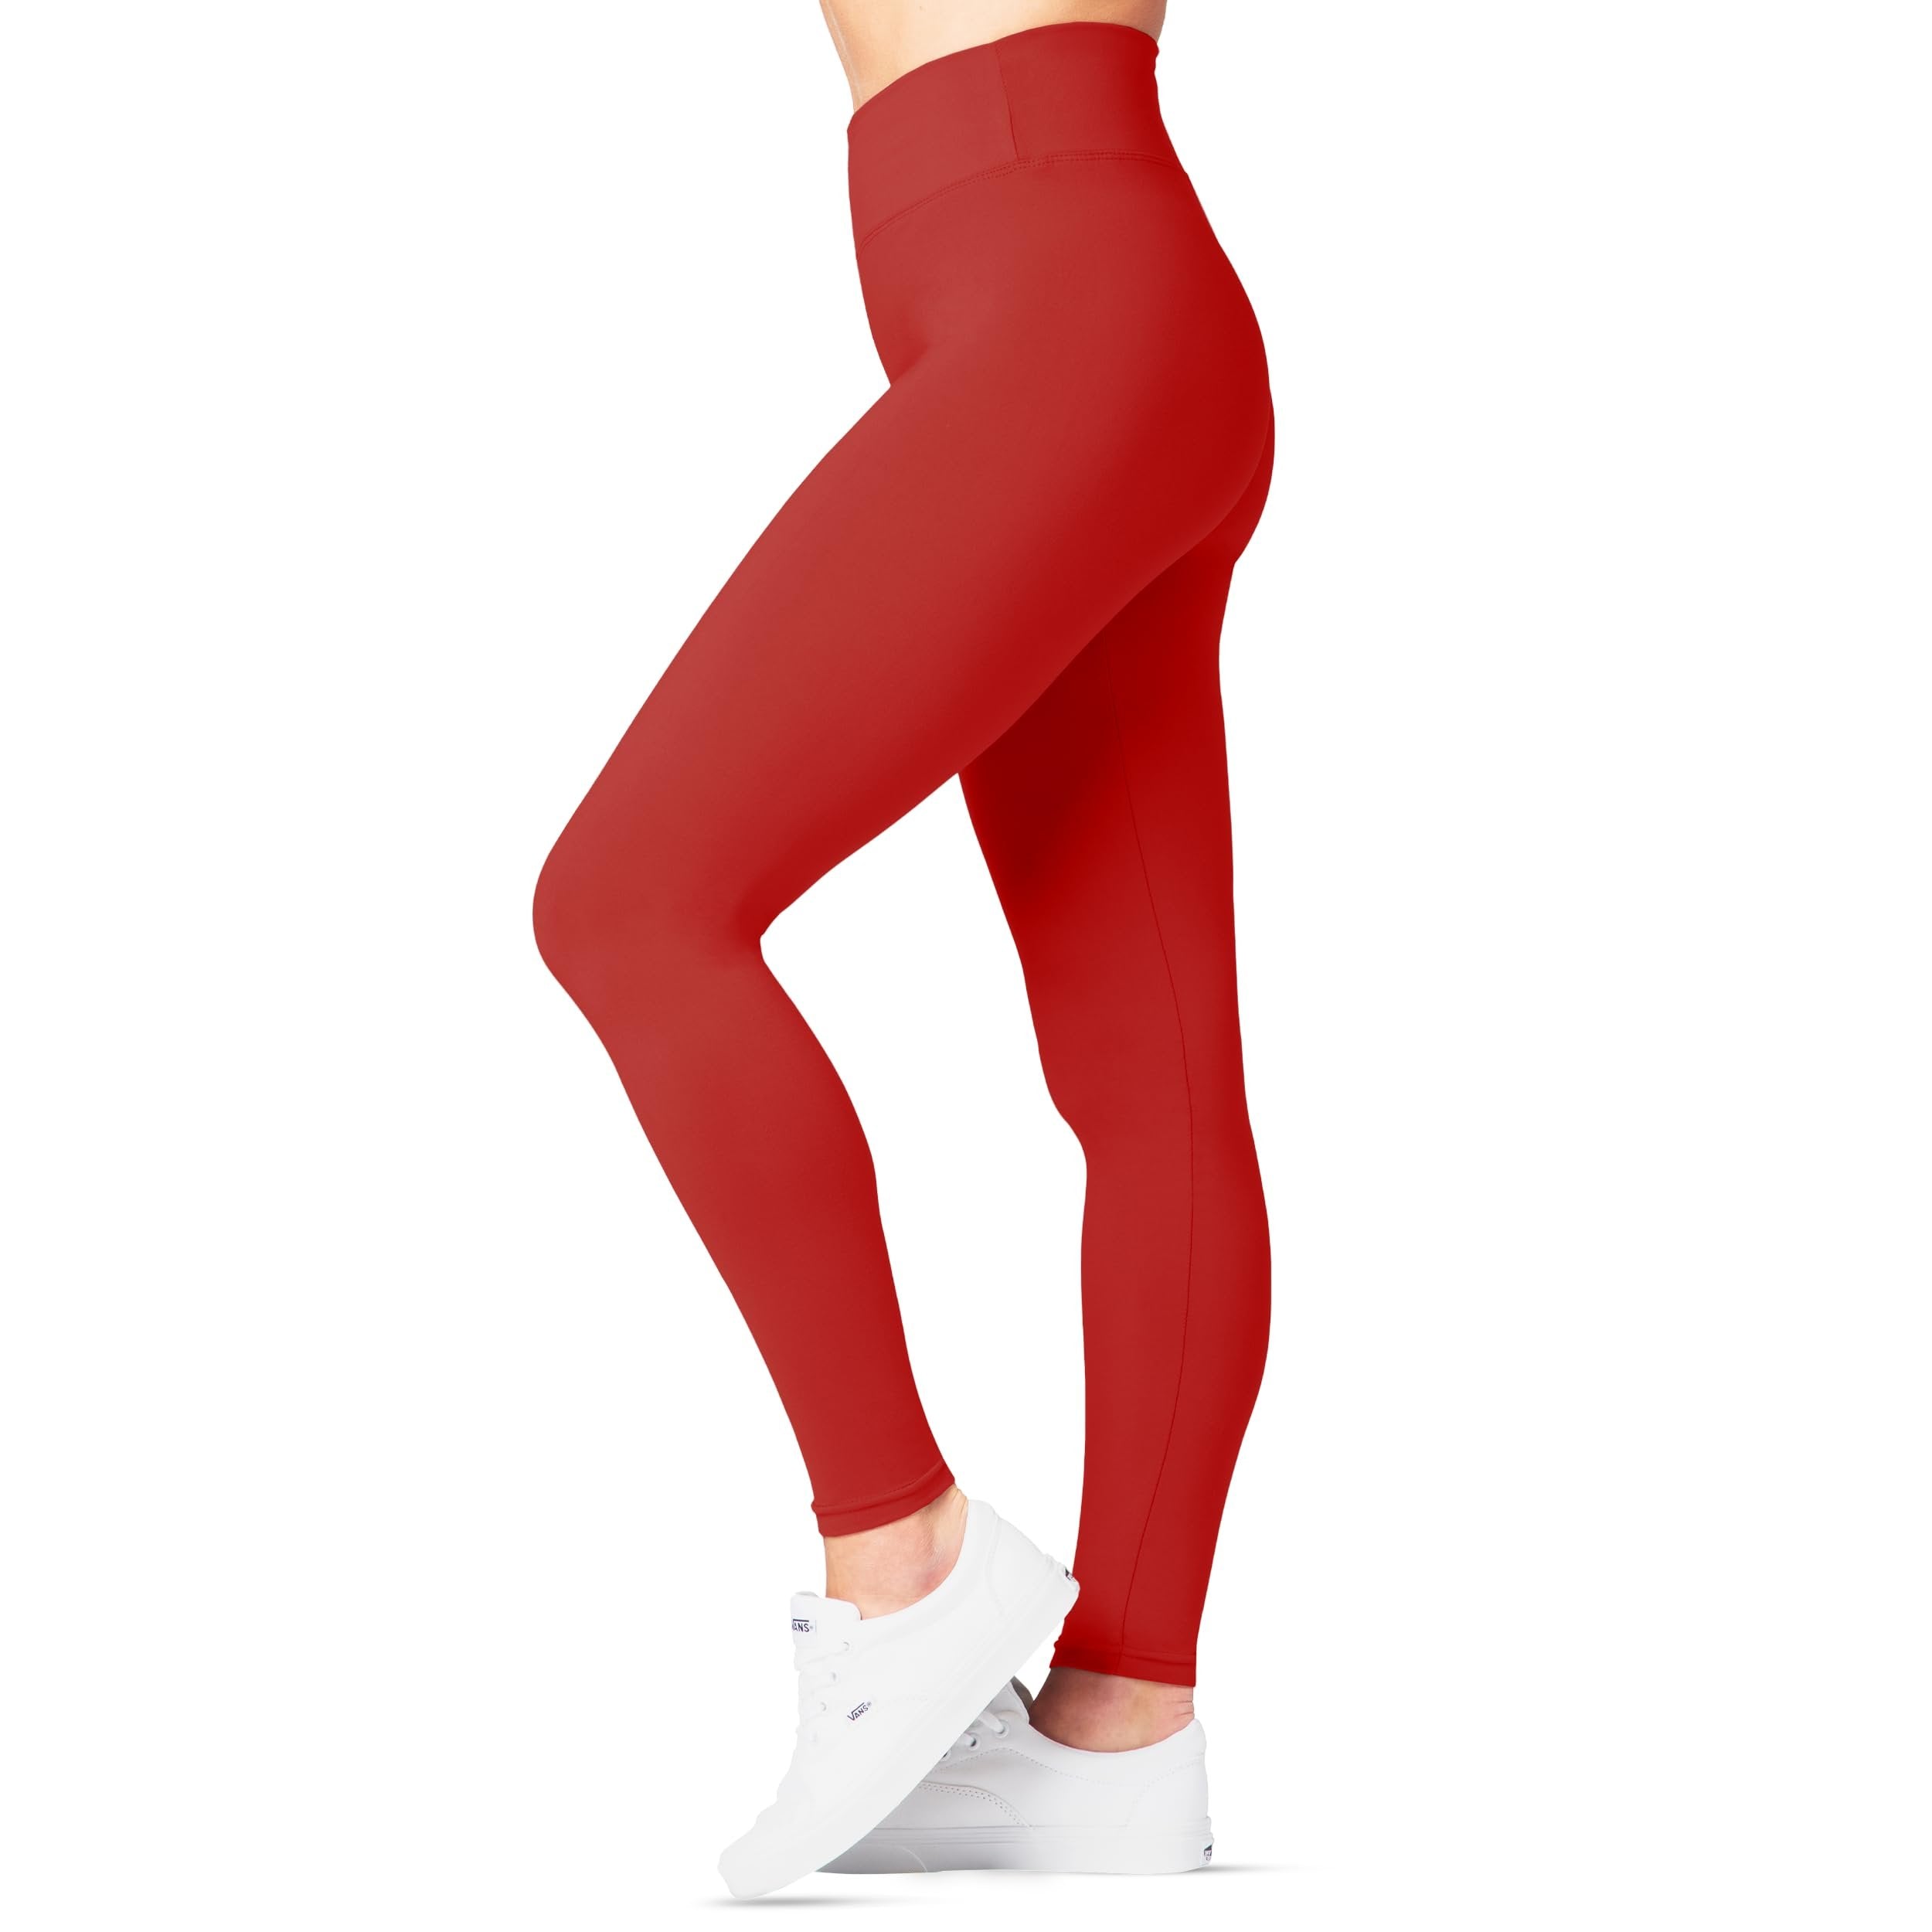 SATINA High Waisted Capri Leggings for Women - Capri Leggings for Women - High Waist for Tummy Control - Red Capri Leggings for |3 Inch Waistband (Plus Size, Red)